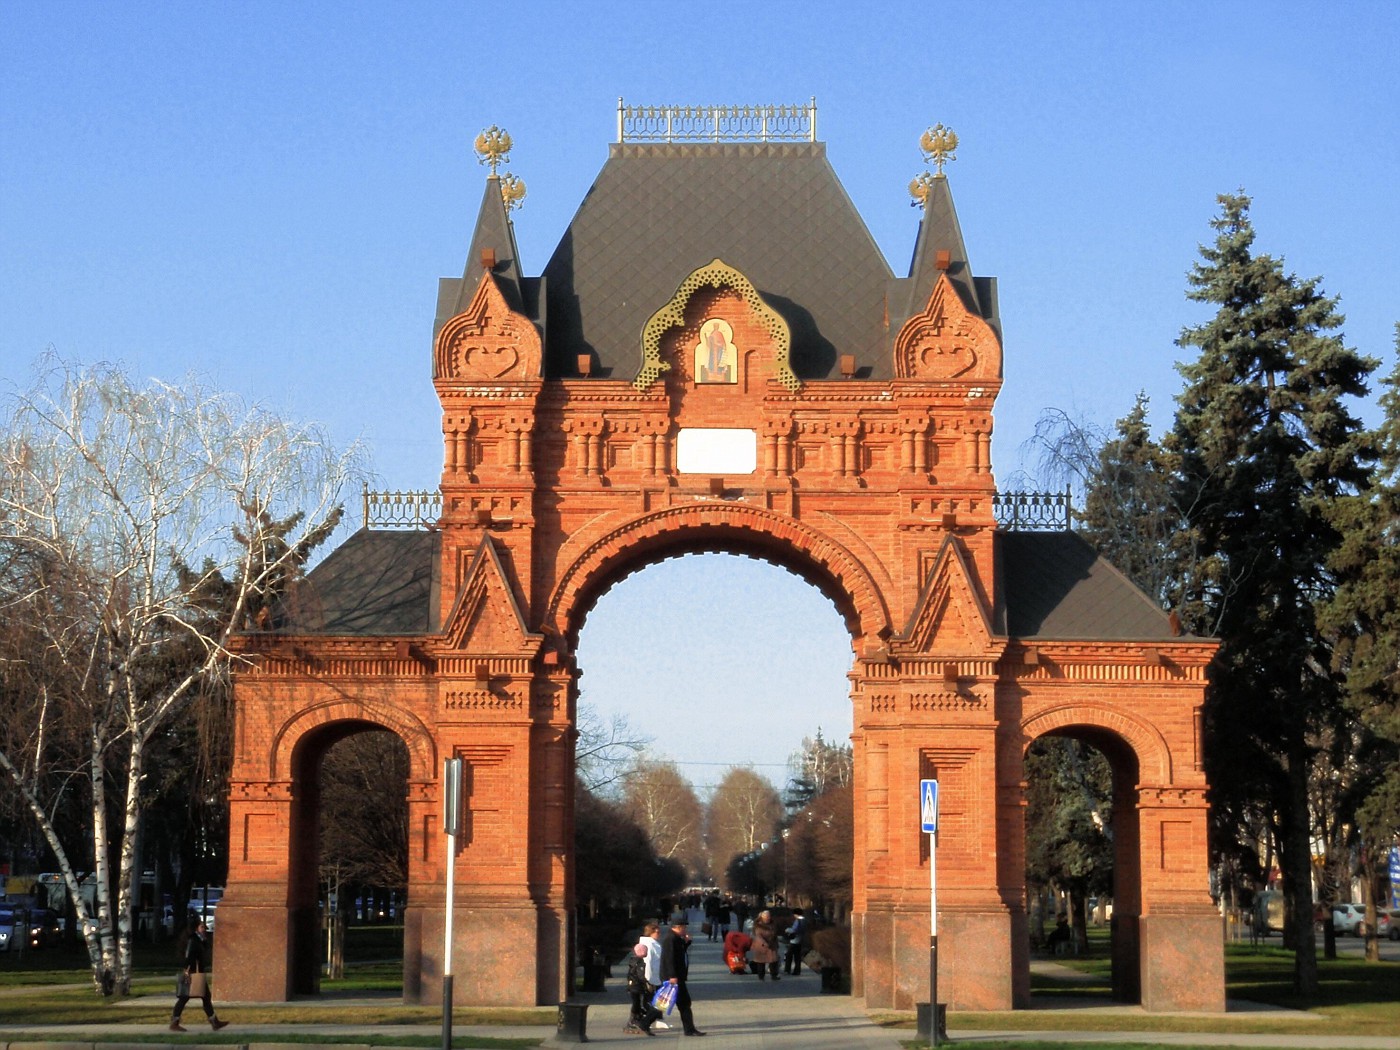 Alexander's Arch